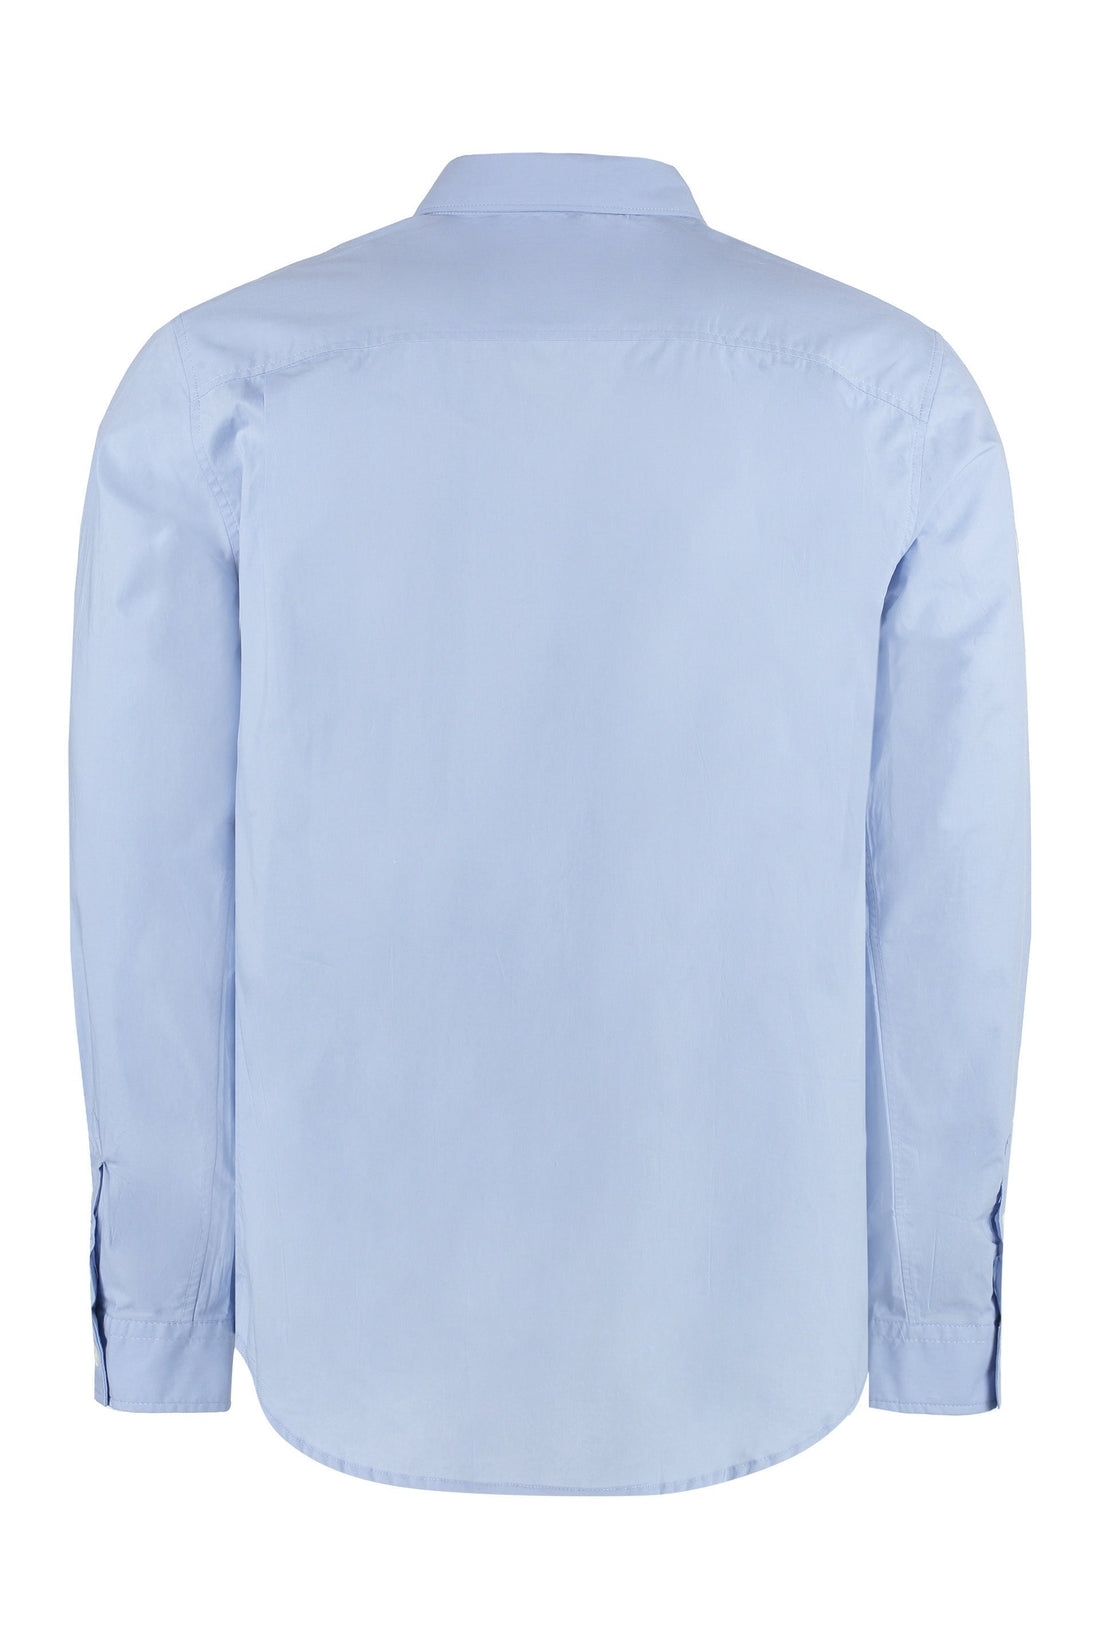 A.P.C.-OUTLET-SALE-Cotton button-down shirt-ARCHIVIST